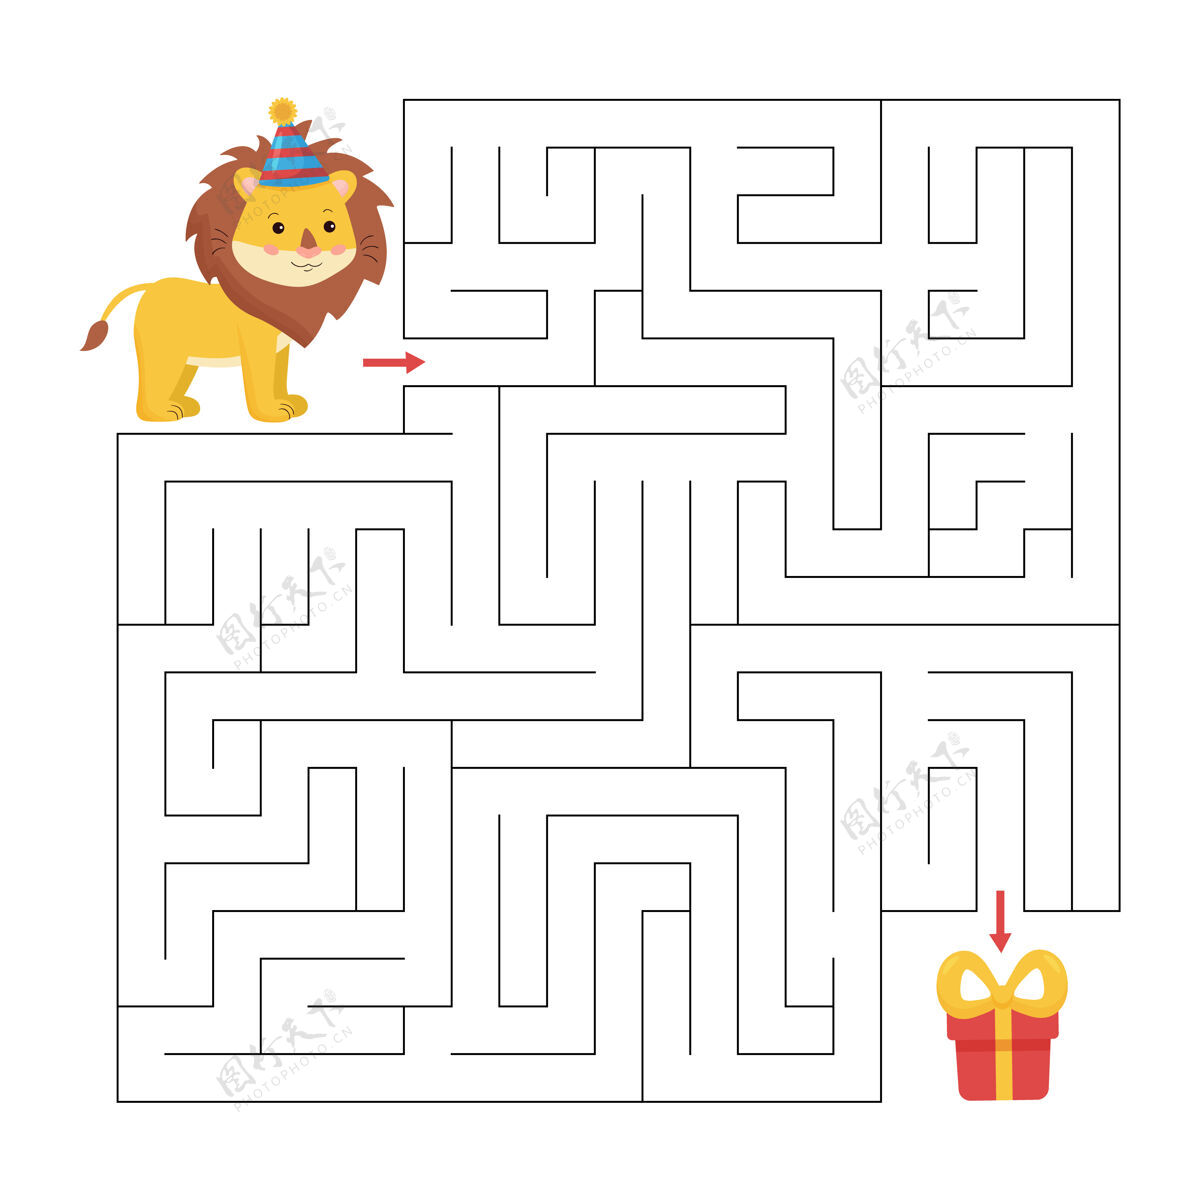 游戏教育迷宫游戏孩子们救命狮子想办法送礼绘画益智工作表